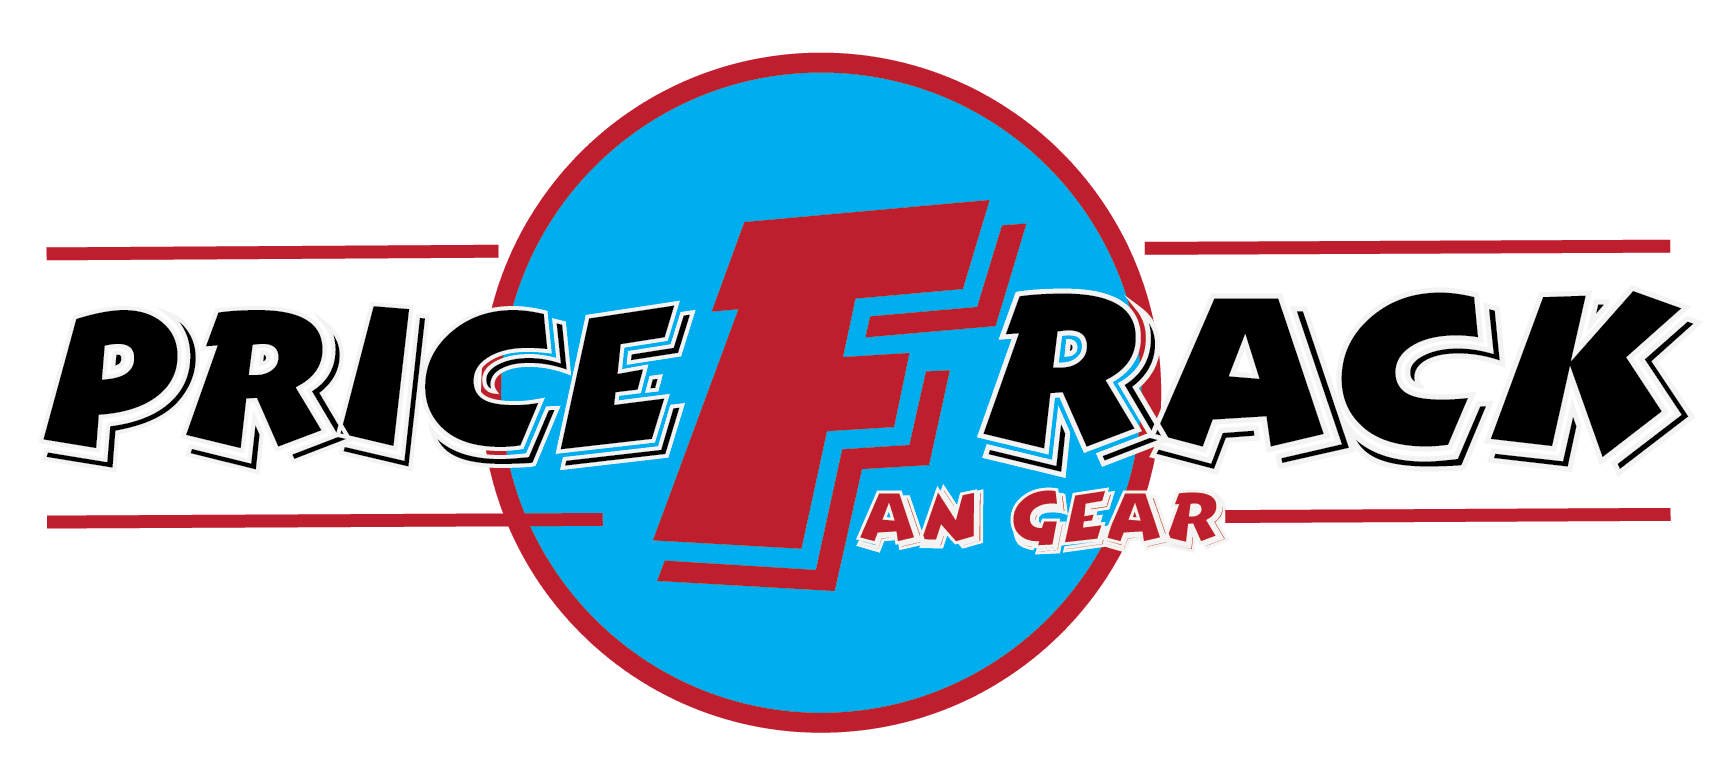 pricefrack_logo_fan_gear-01_cd96cb5f-0c18-49a5-842c-c8f99133b5b2 - PriceFrack